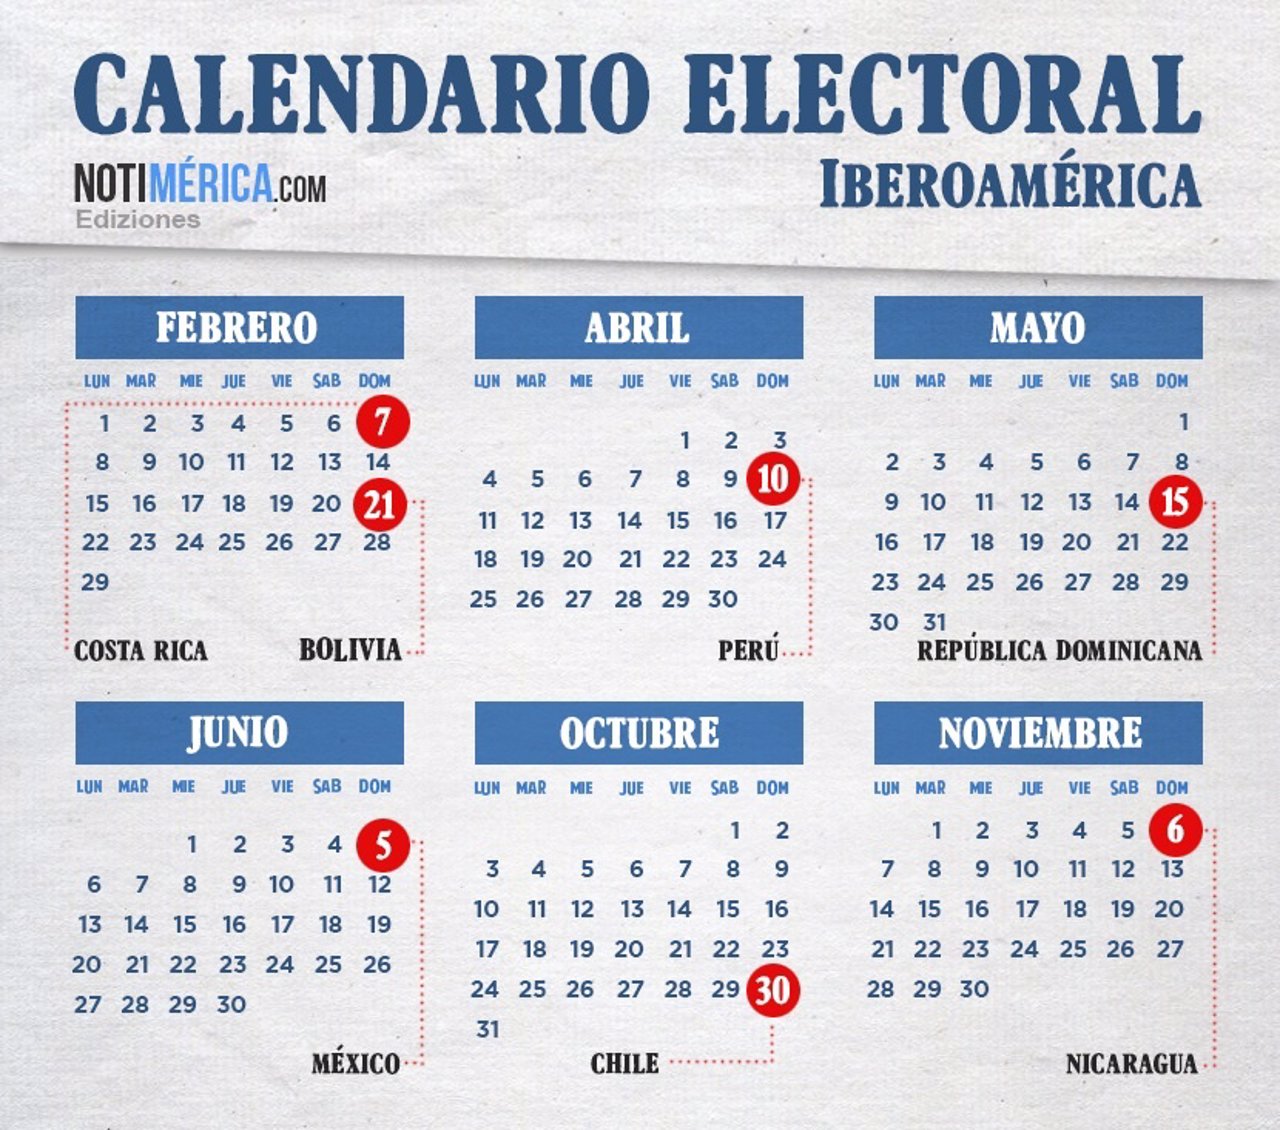 Calendario electoral de Iberoamérica en 2016